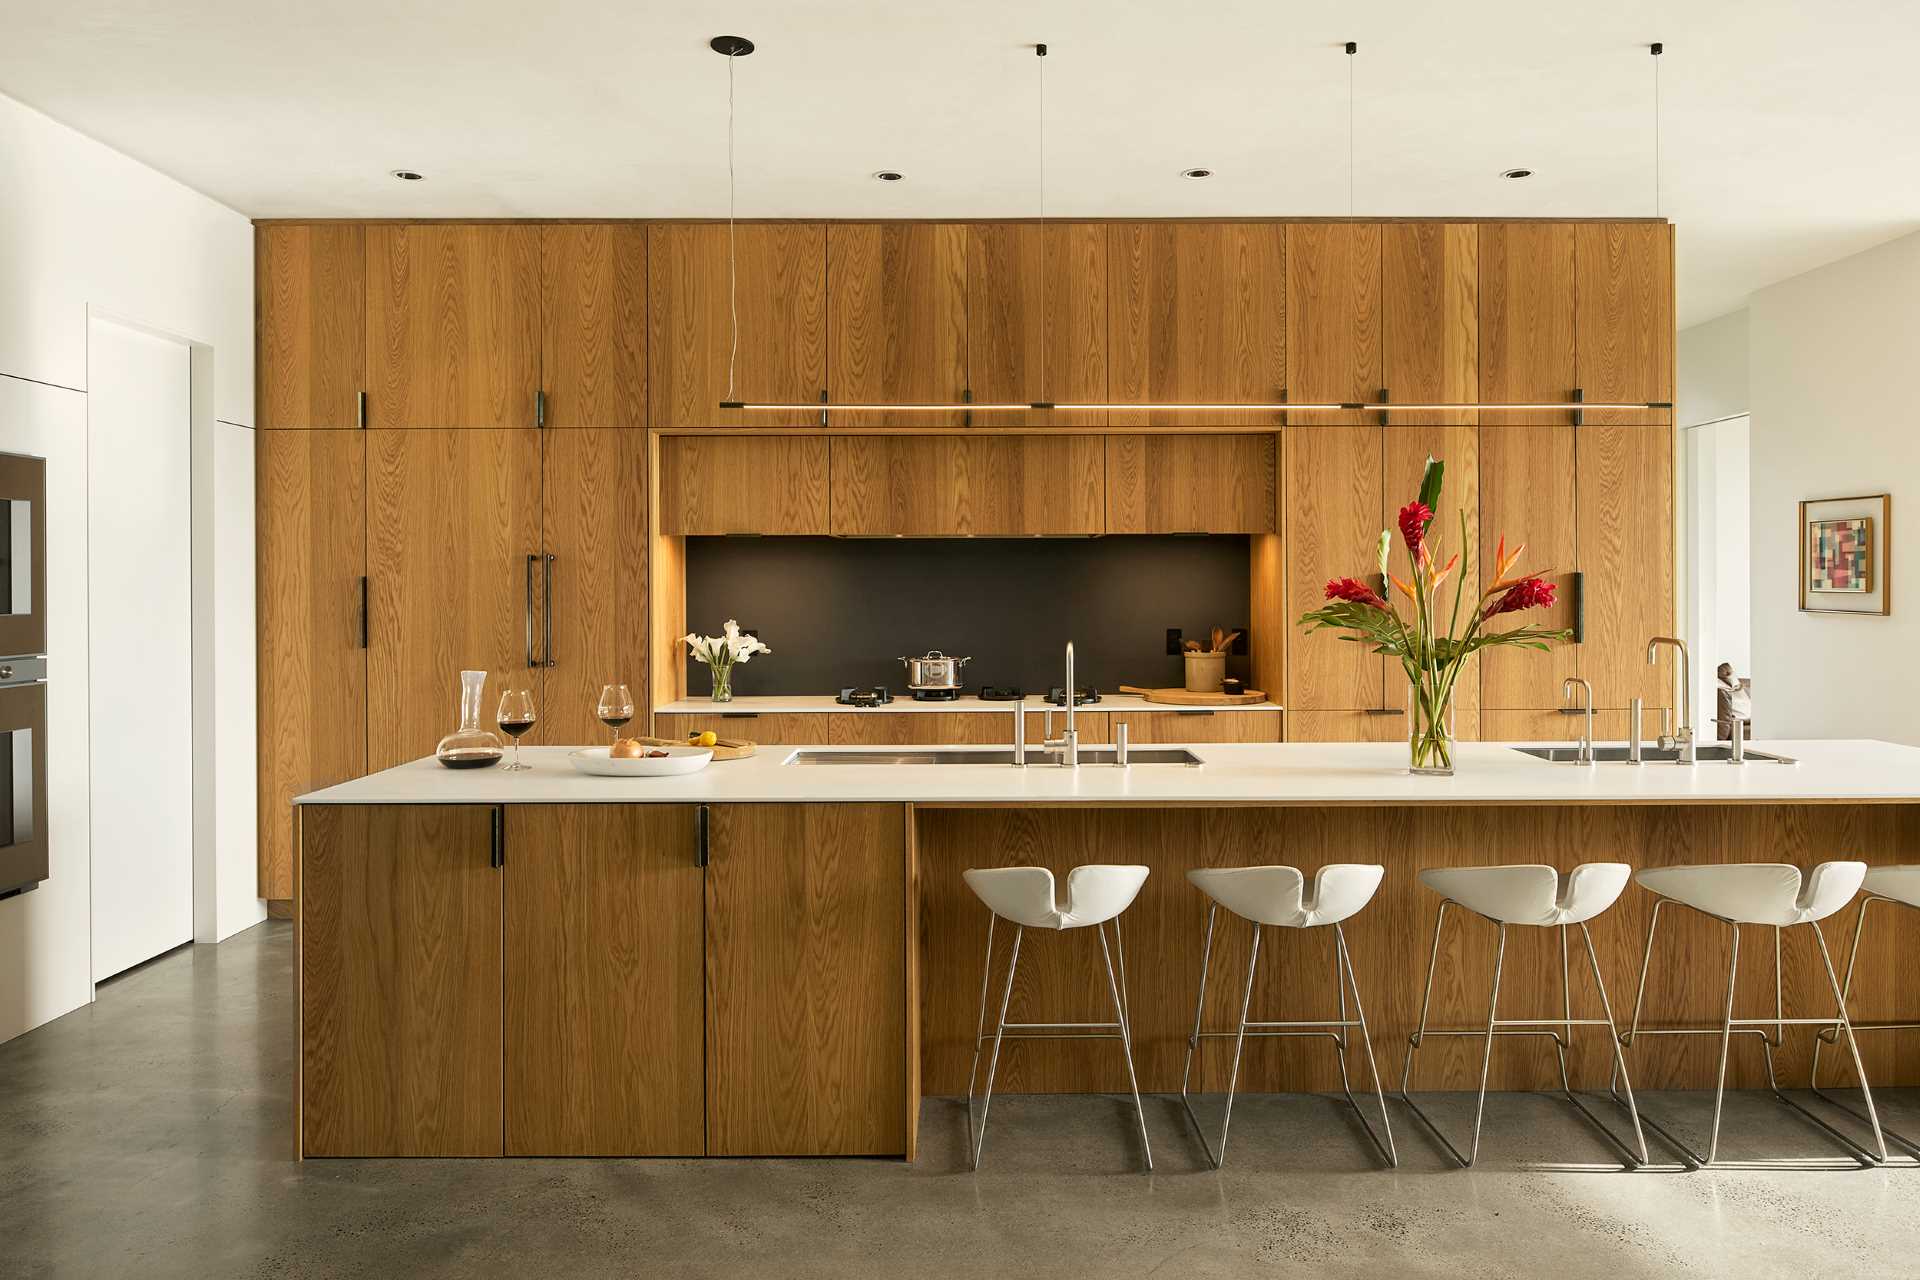 این آشپزخانه مدرن دارای کابینت بلوط سفید اره شده و میزهای کورین است.